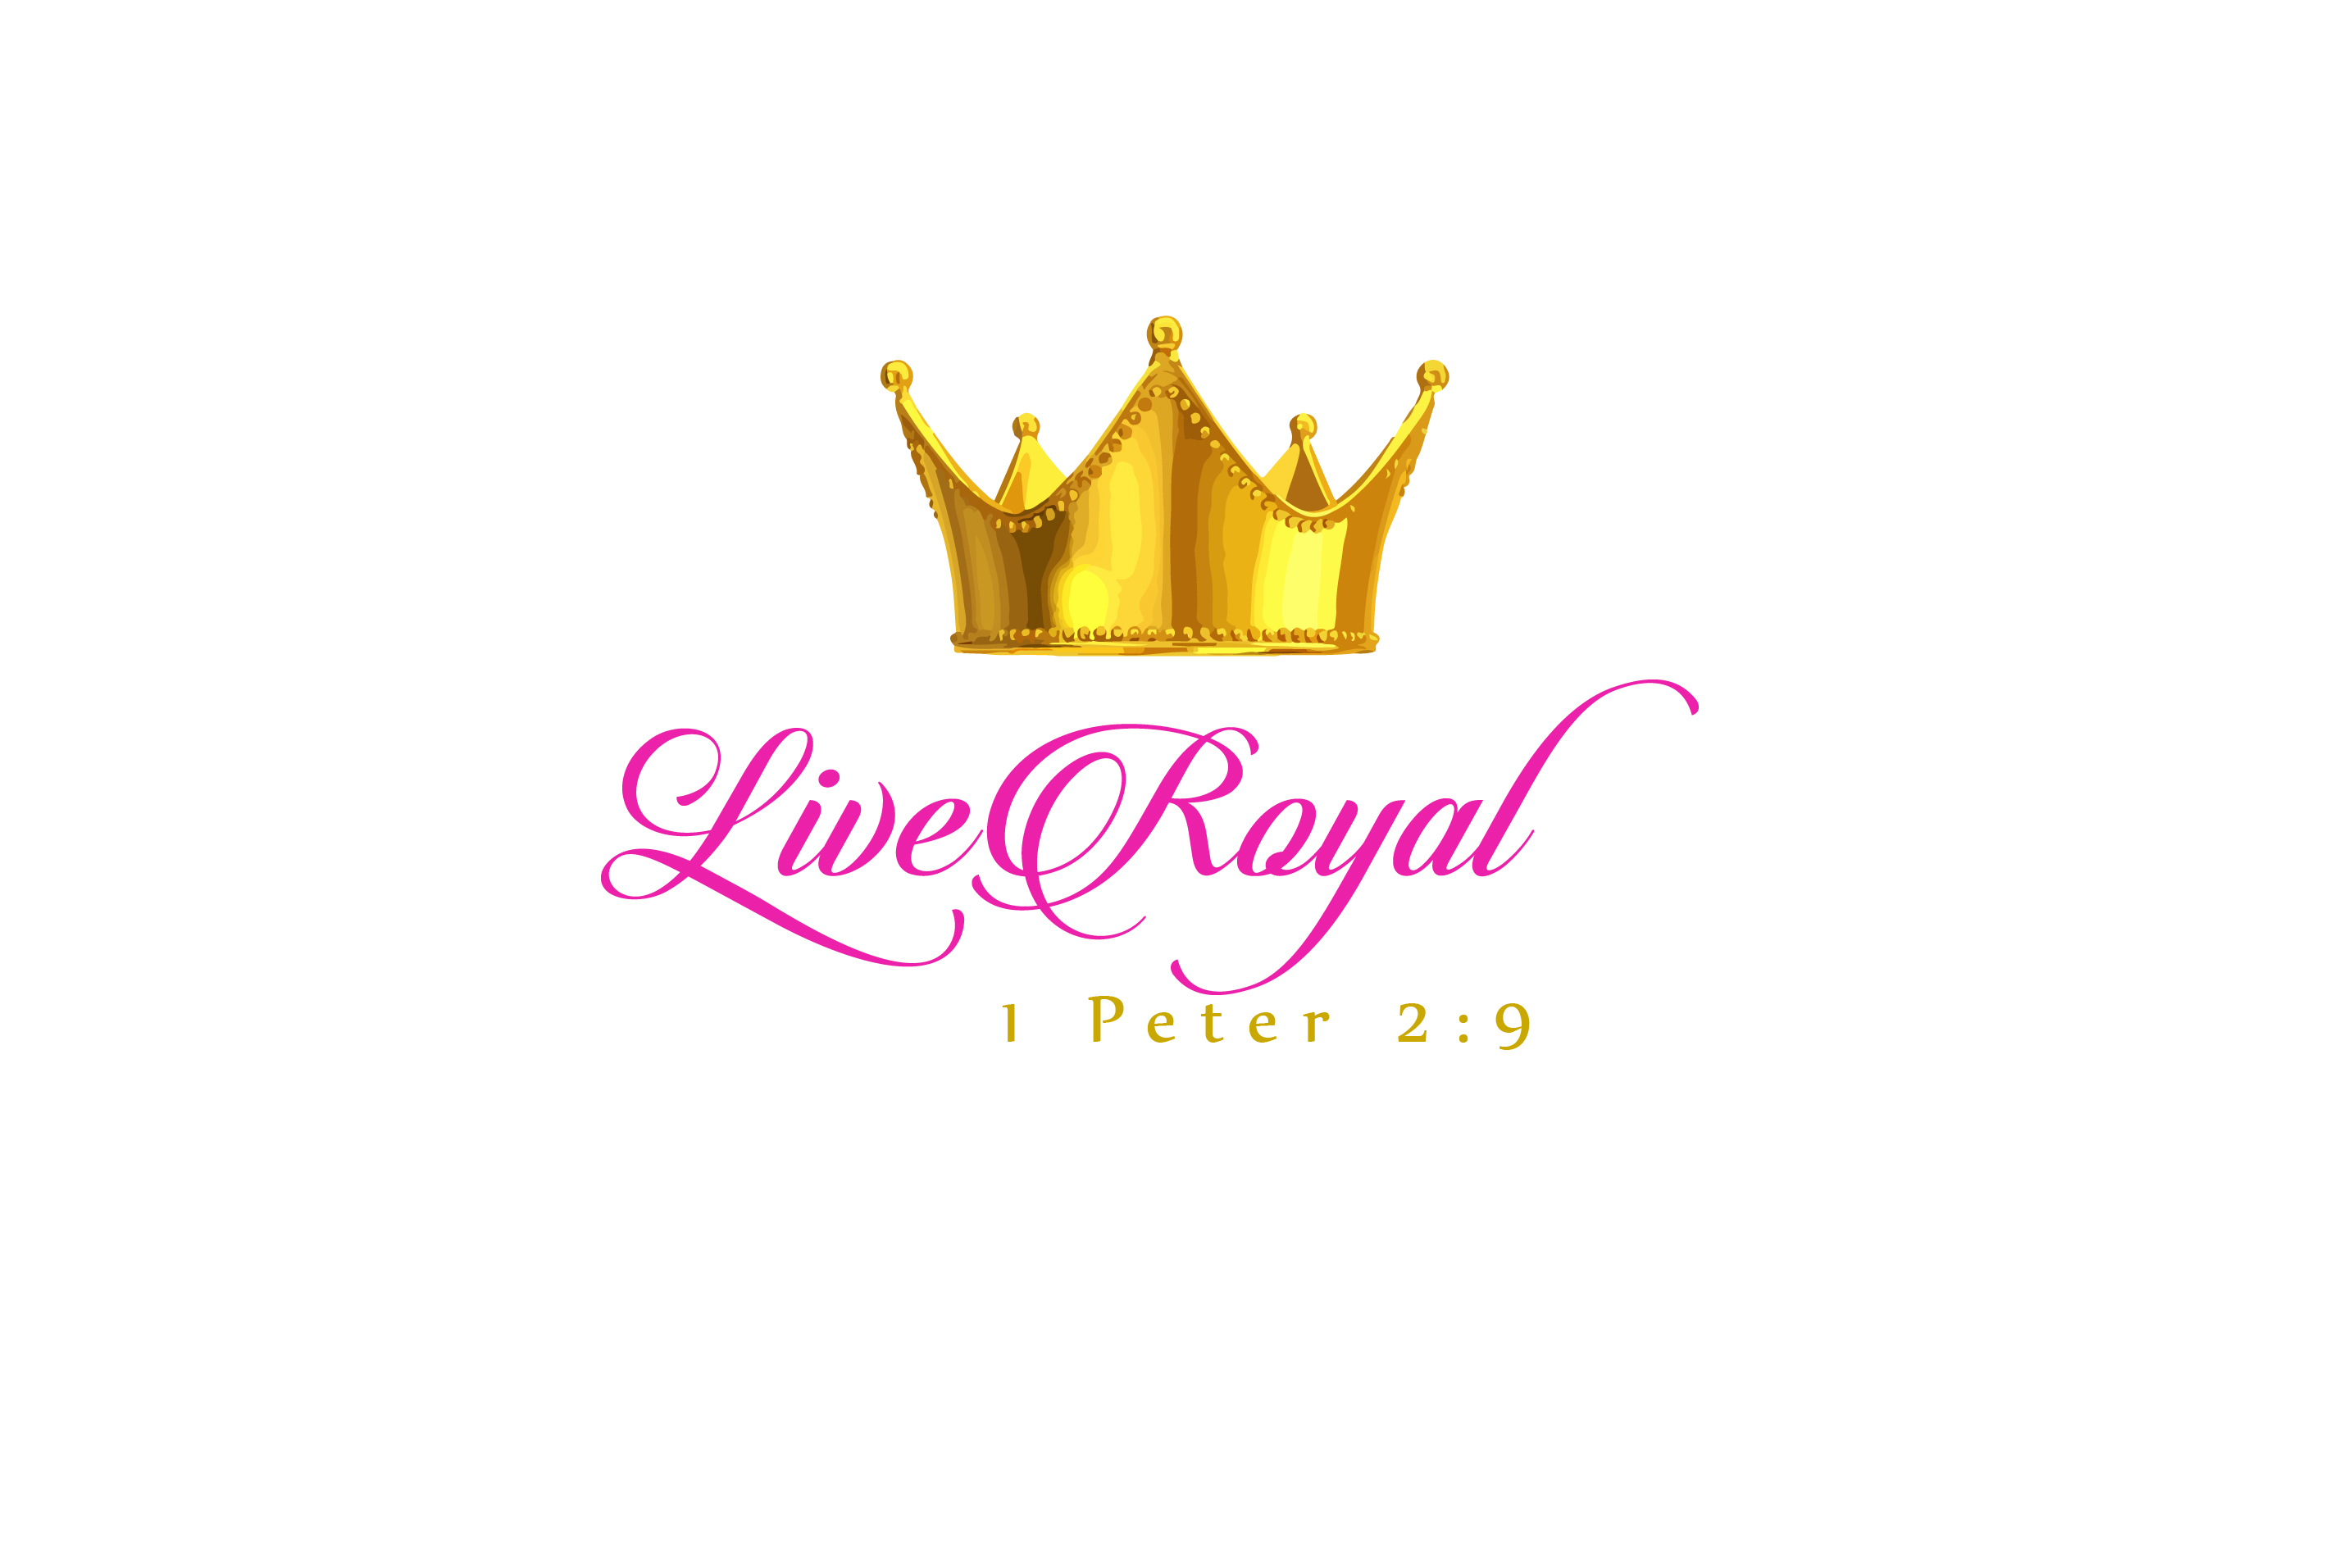 The Live Royal Blog